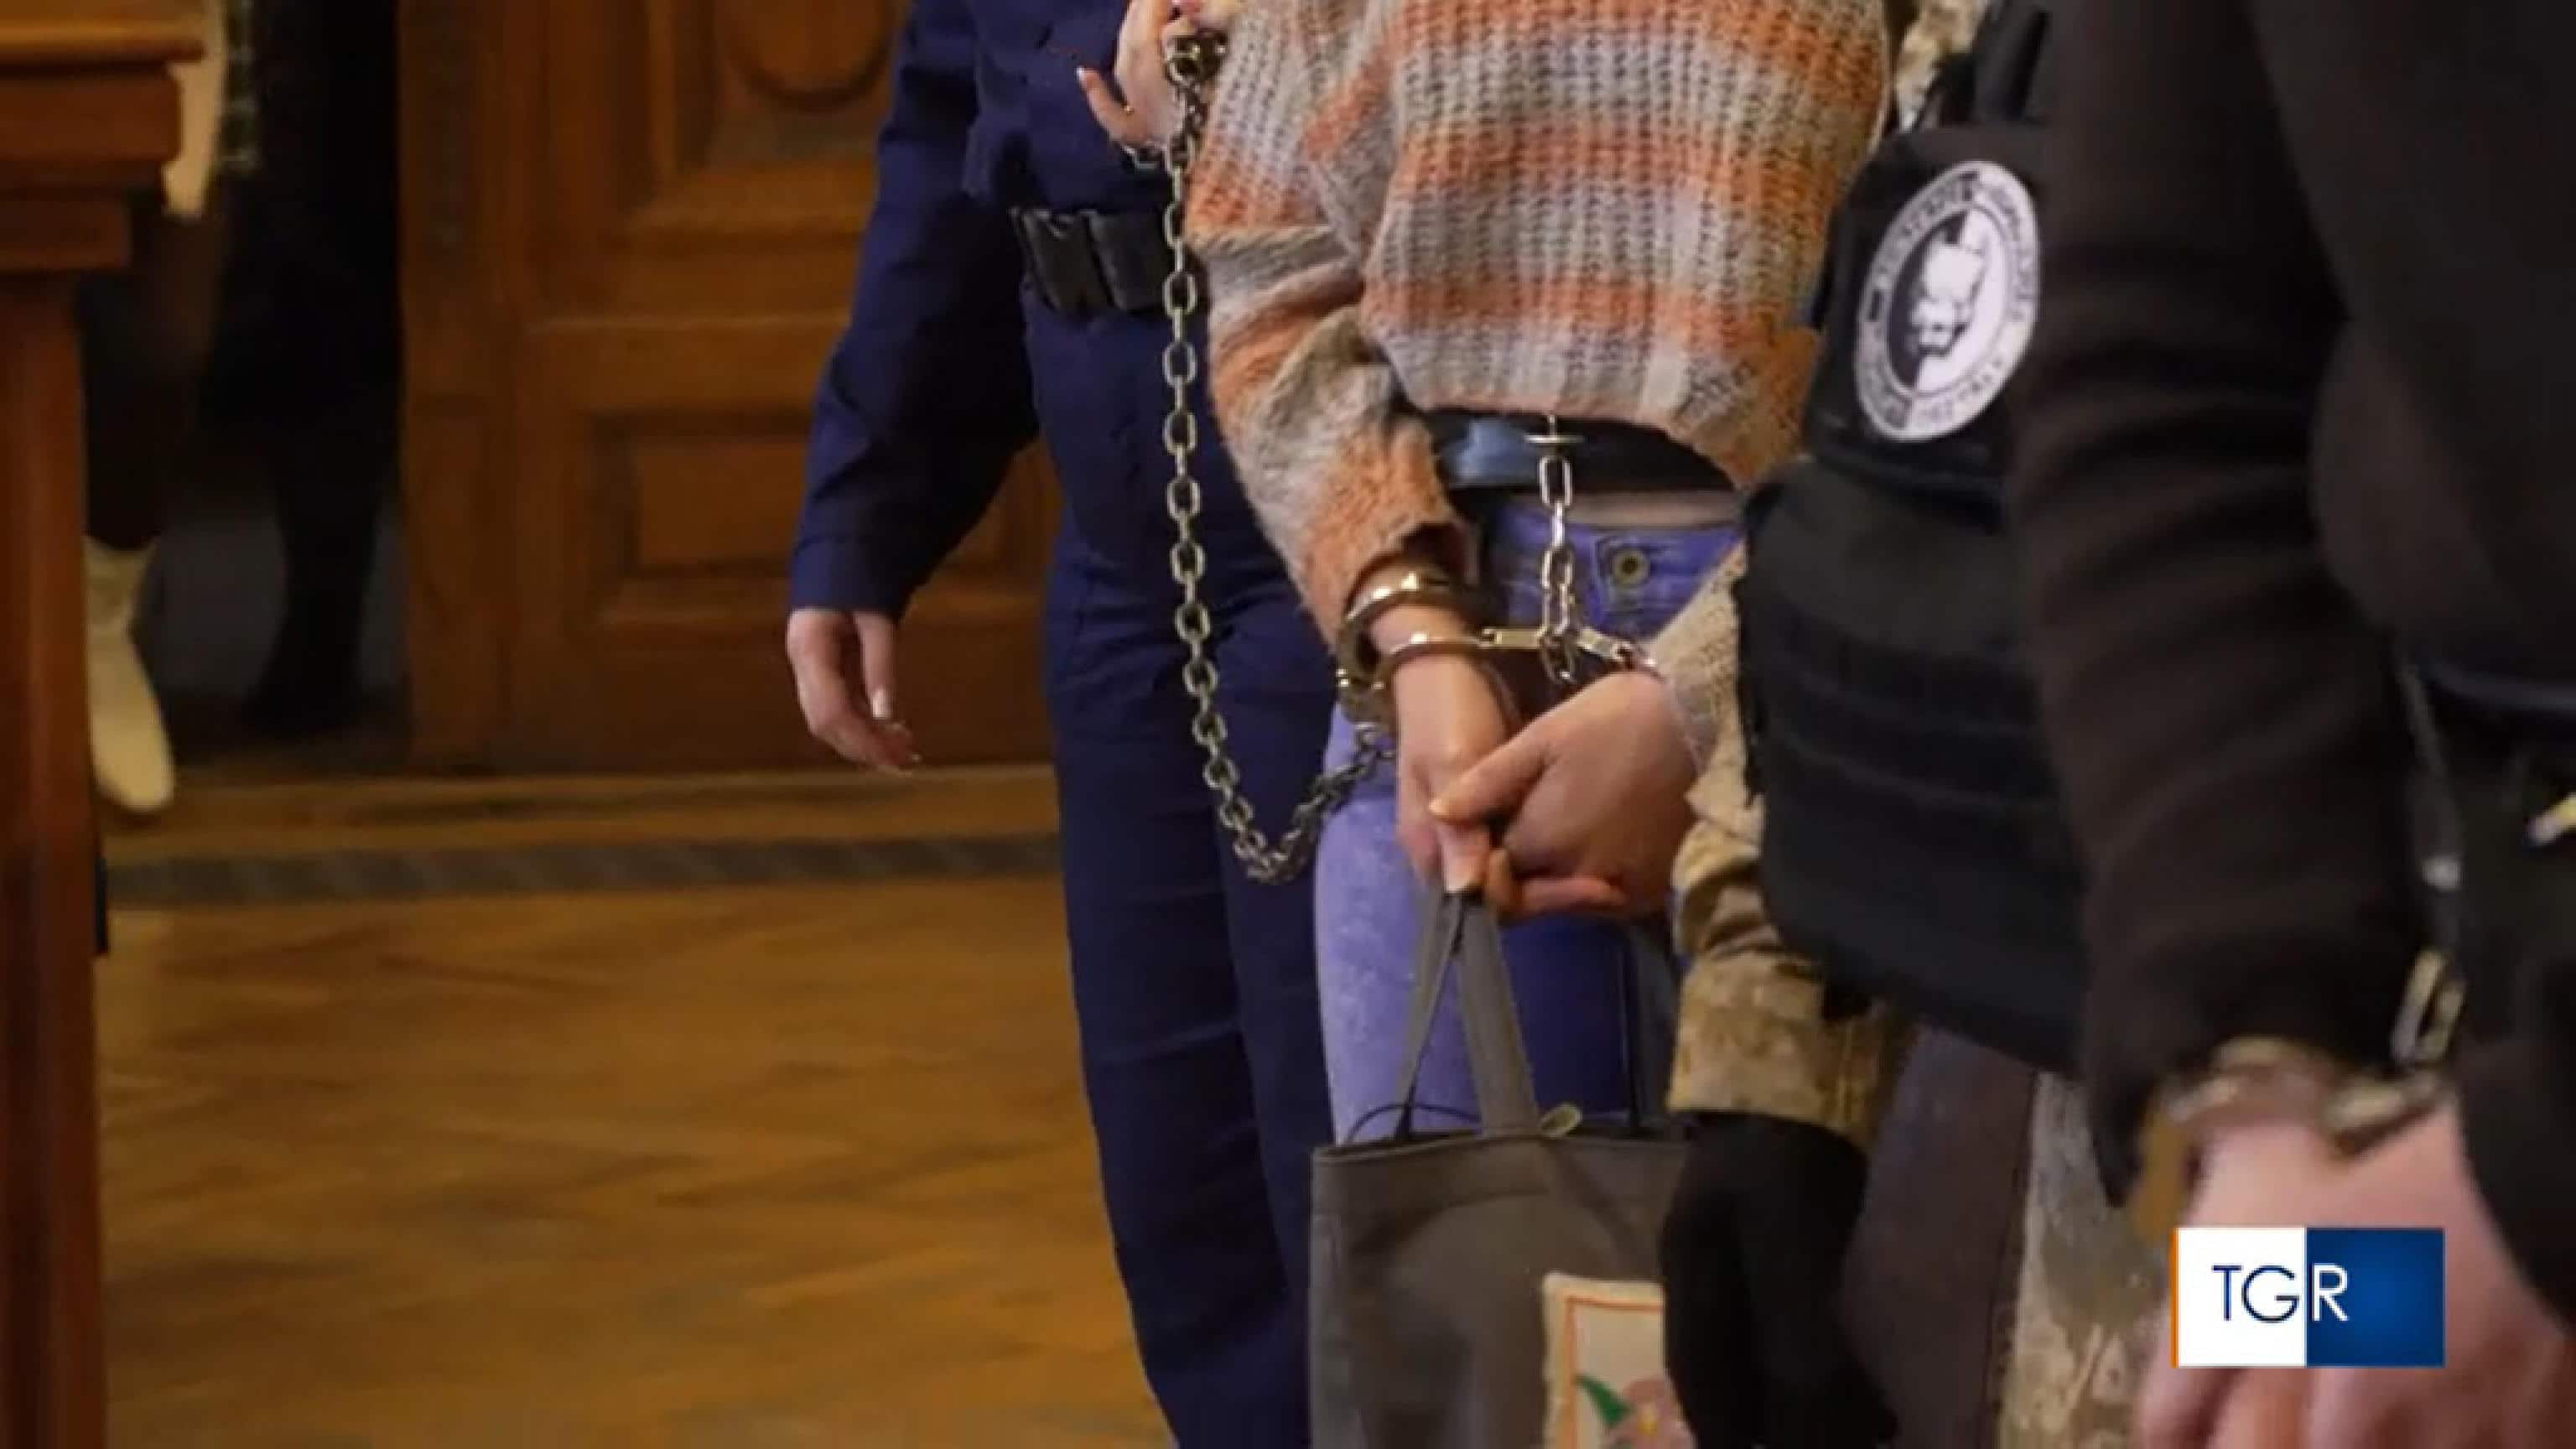 Ilaria Salis è comparsa in aula in catene, con le manette ai polsi e i piedi legati da ceppi di cuoio con lucchetti, 29 gennaio 2024. Lo ha constato l'ANSA in aula a Budapest dove la donna è entrata accennando un sorriso rivolto al pubblico. Una donna delle forze di sicurezza la trascinava per una catena. Salis indossava un maglione chiaro a strisce orizzontali e teneva in mano una borsa scura. ANSA/RAINEWS +++ NPK +++